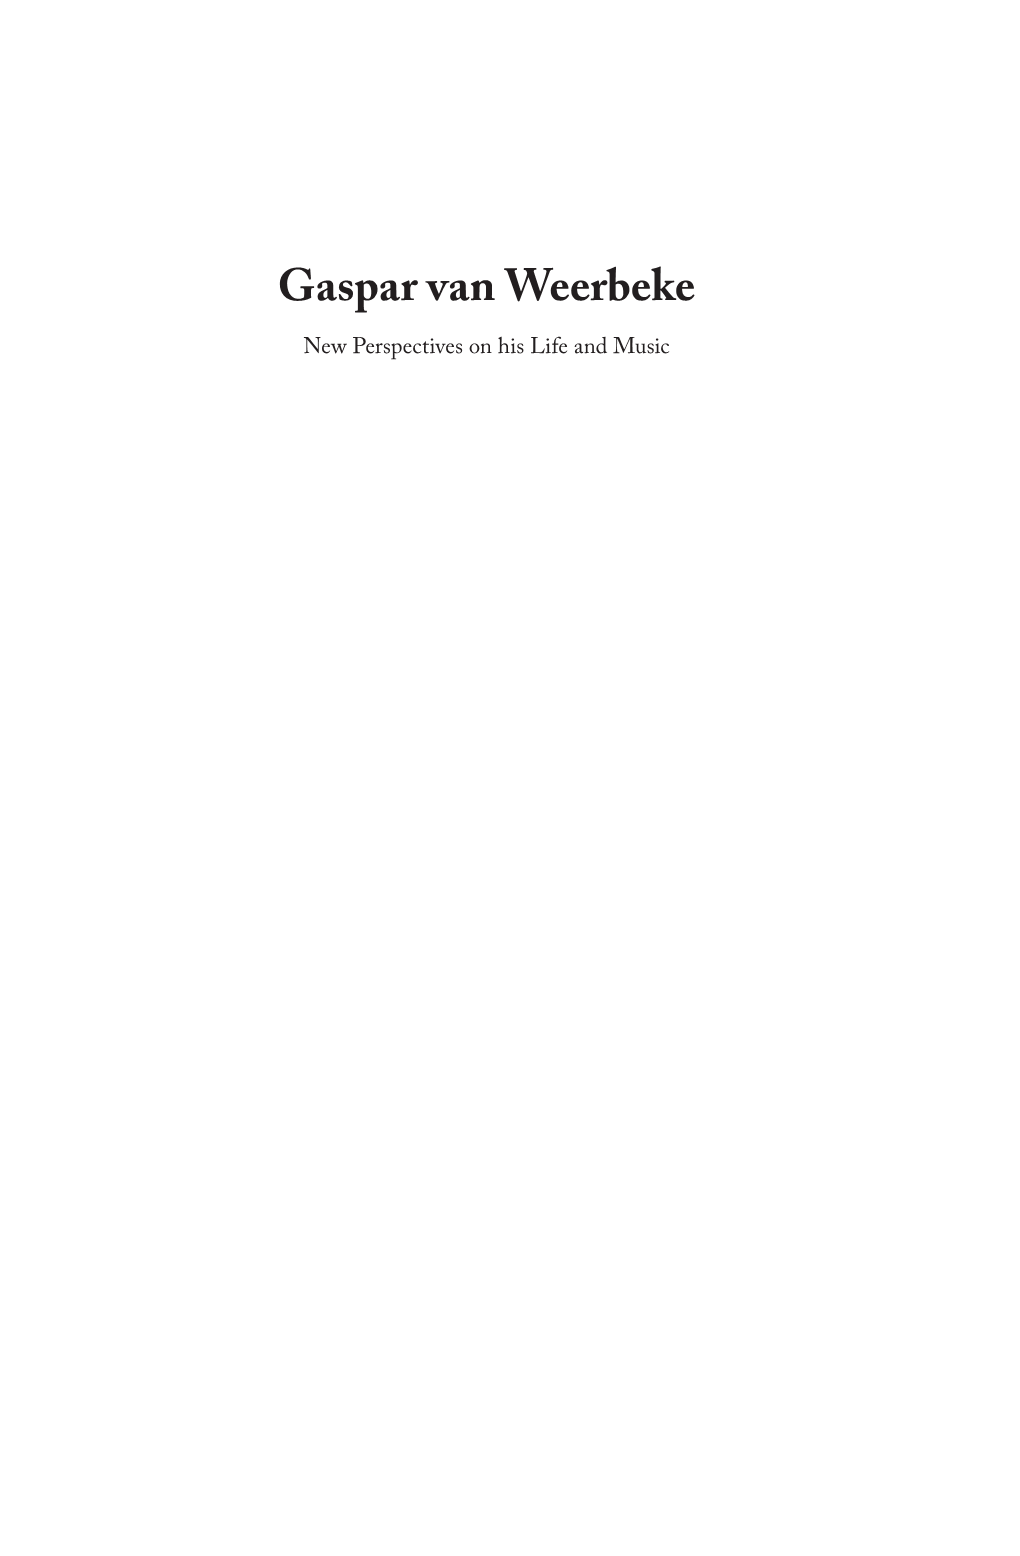 Gaspar Van Weerbeke New Perspectives on His Life and Music Gaspar Van Weerbeke New Perspectives on His Life and Music